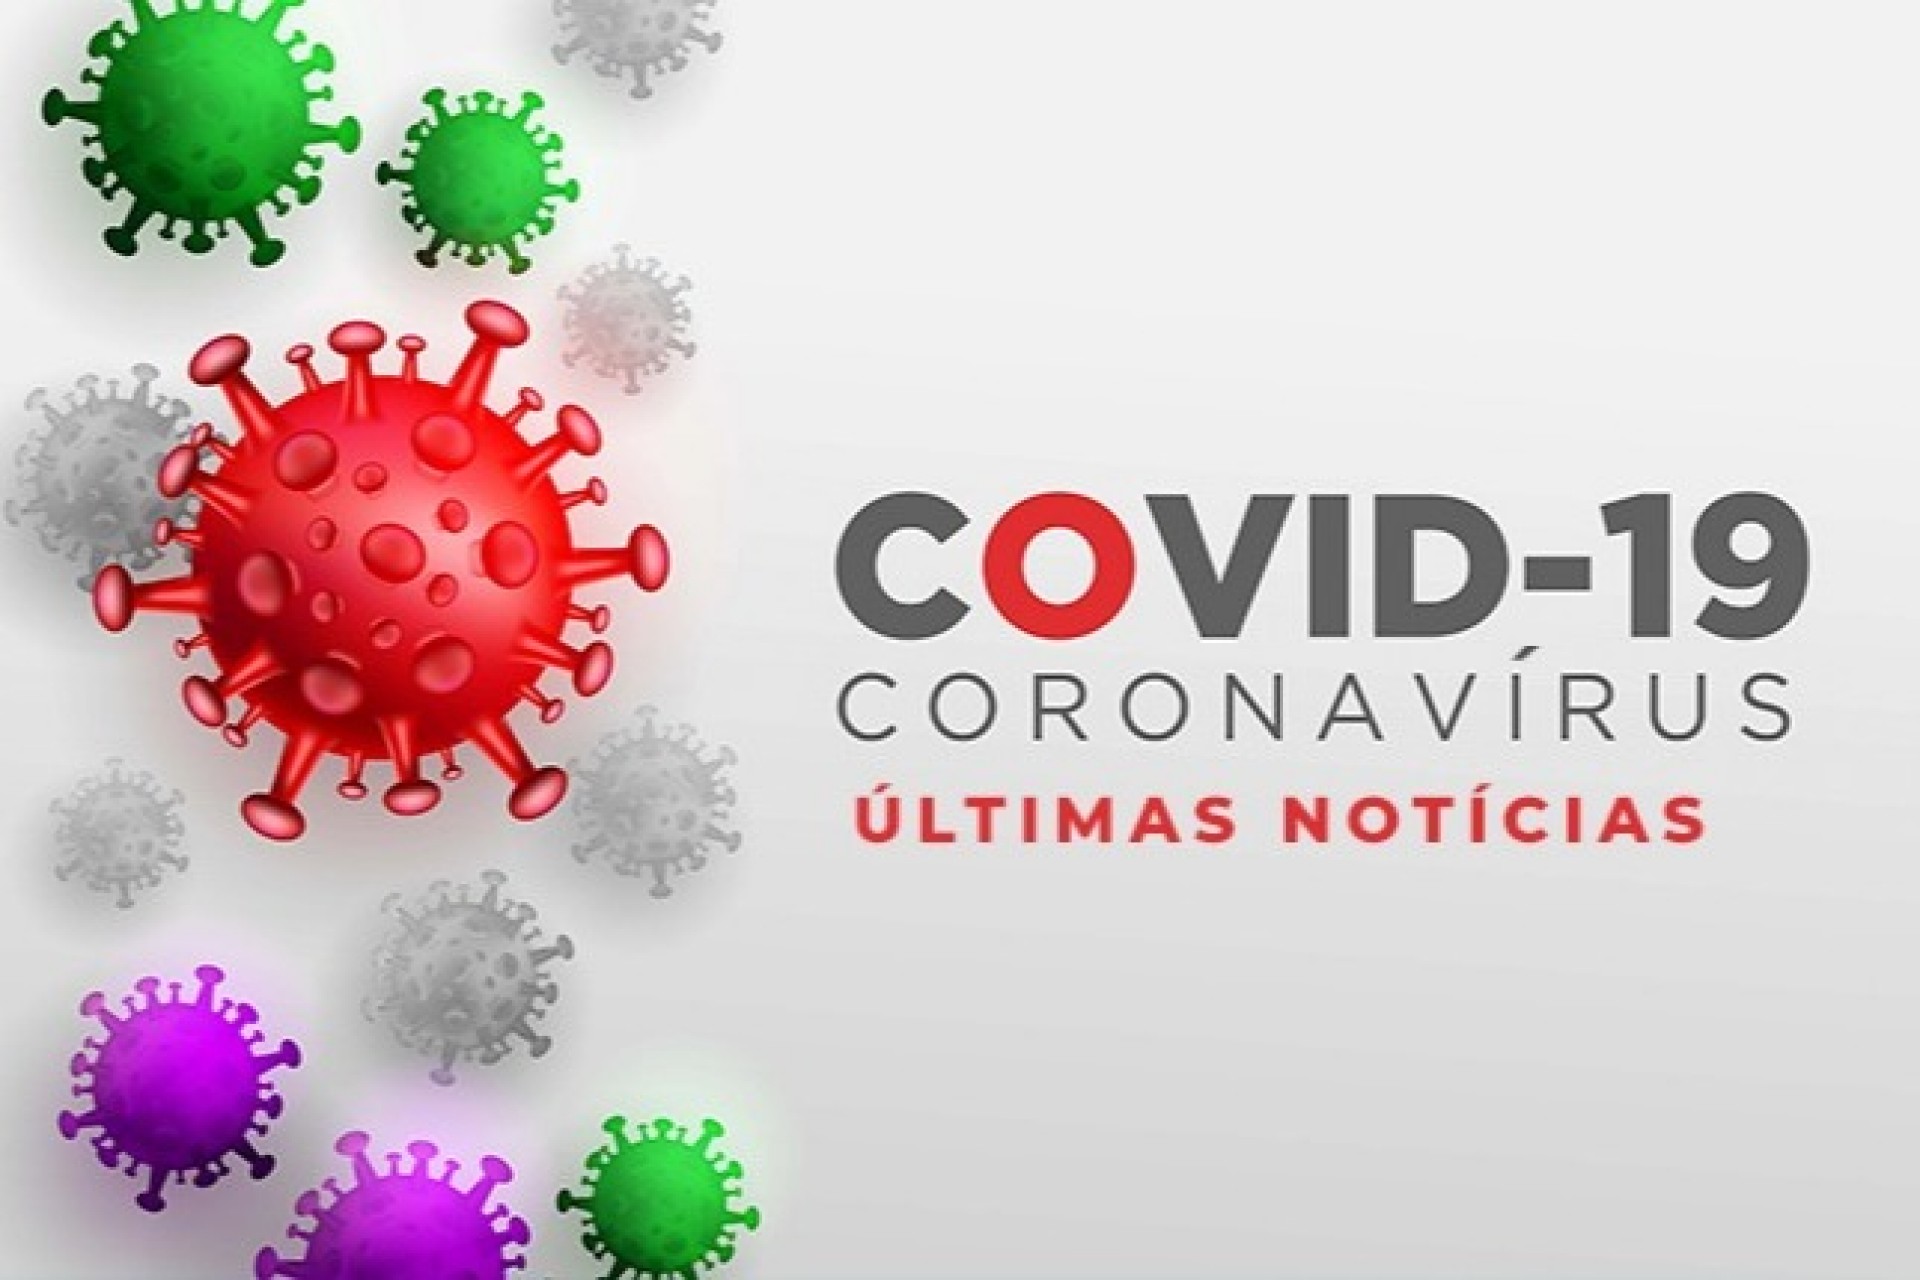 Itaipulândia confirma mais um caso e totaliza 29 infectados pelo Covid 19